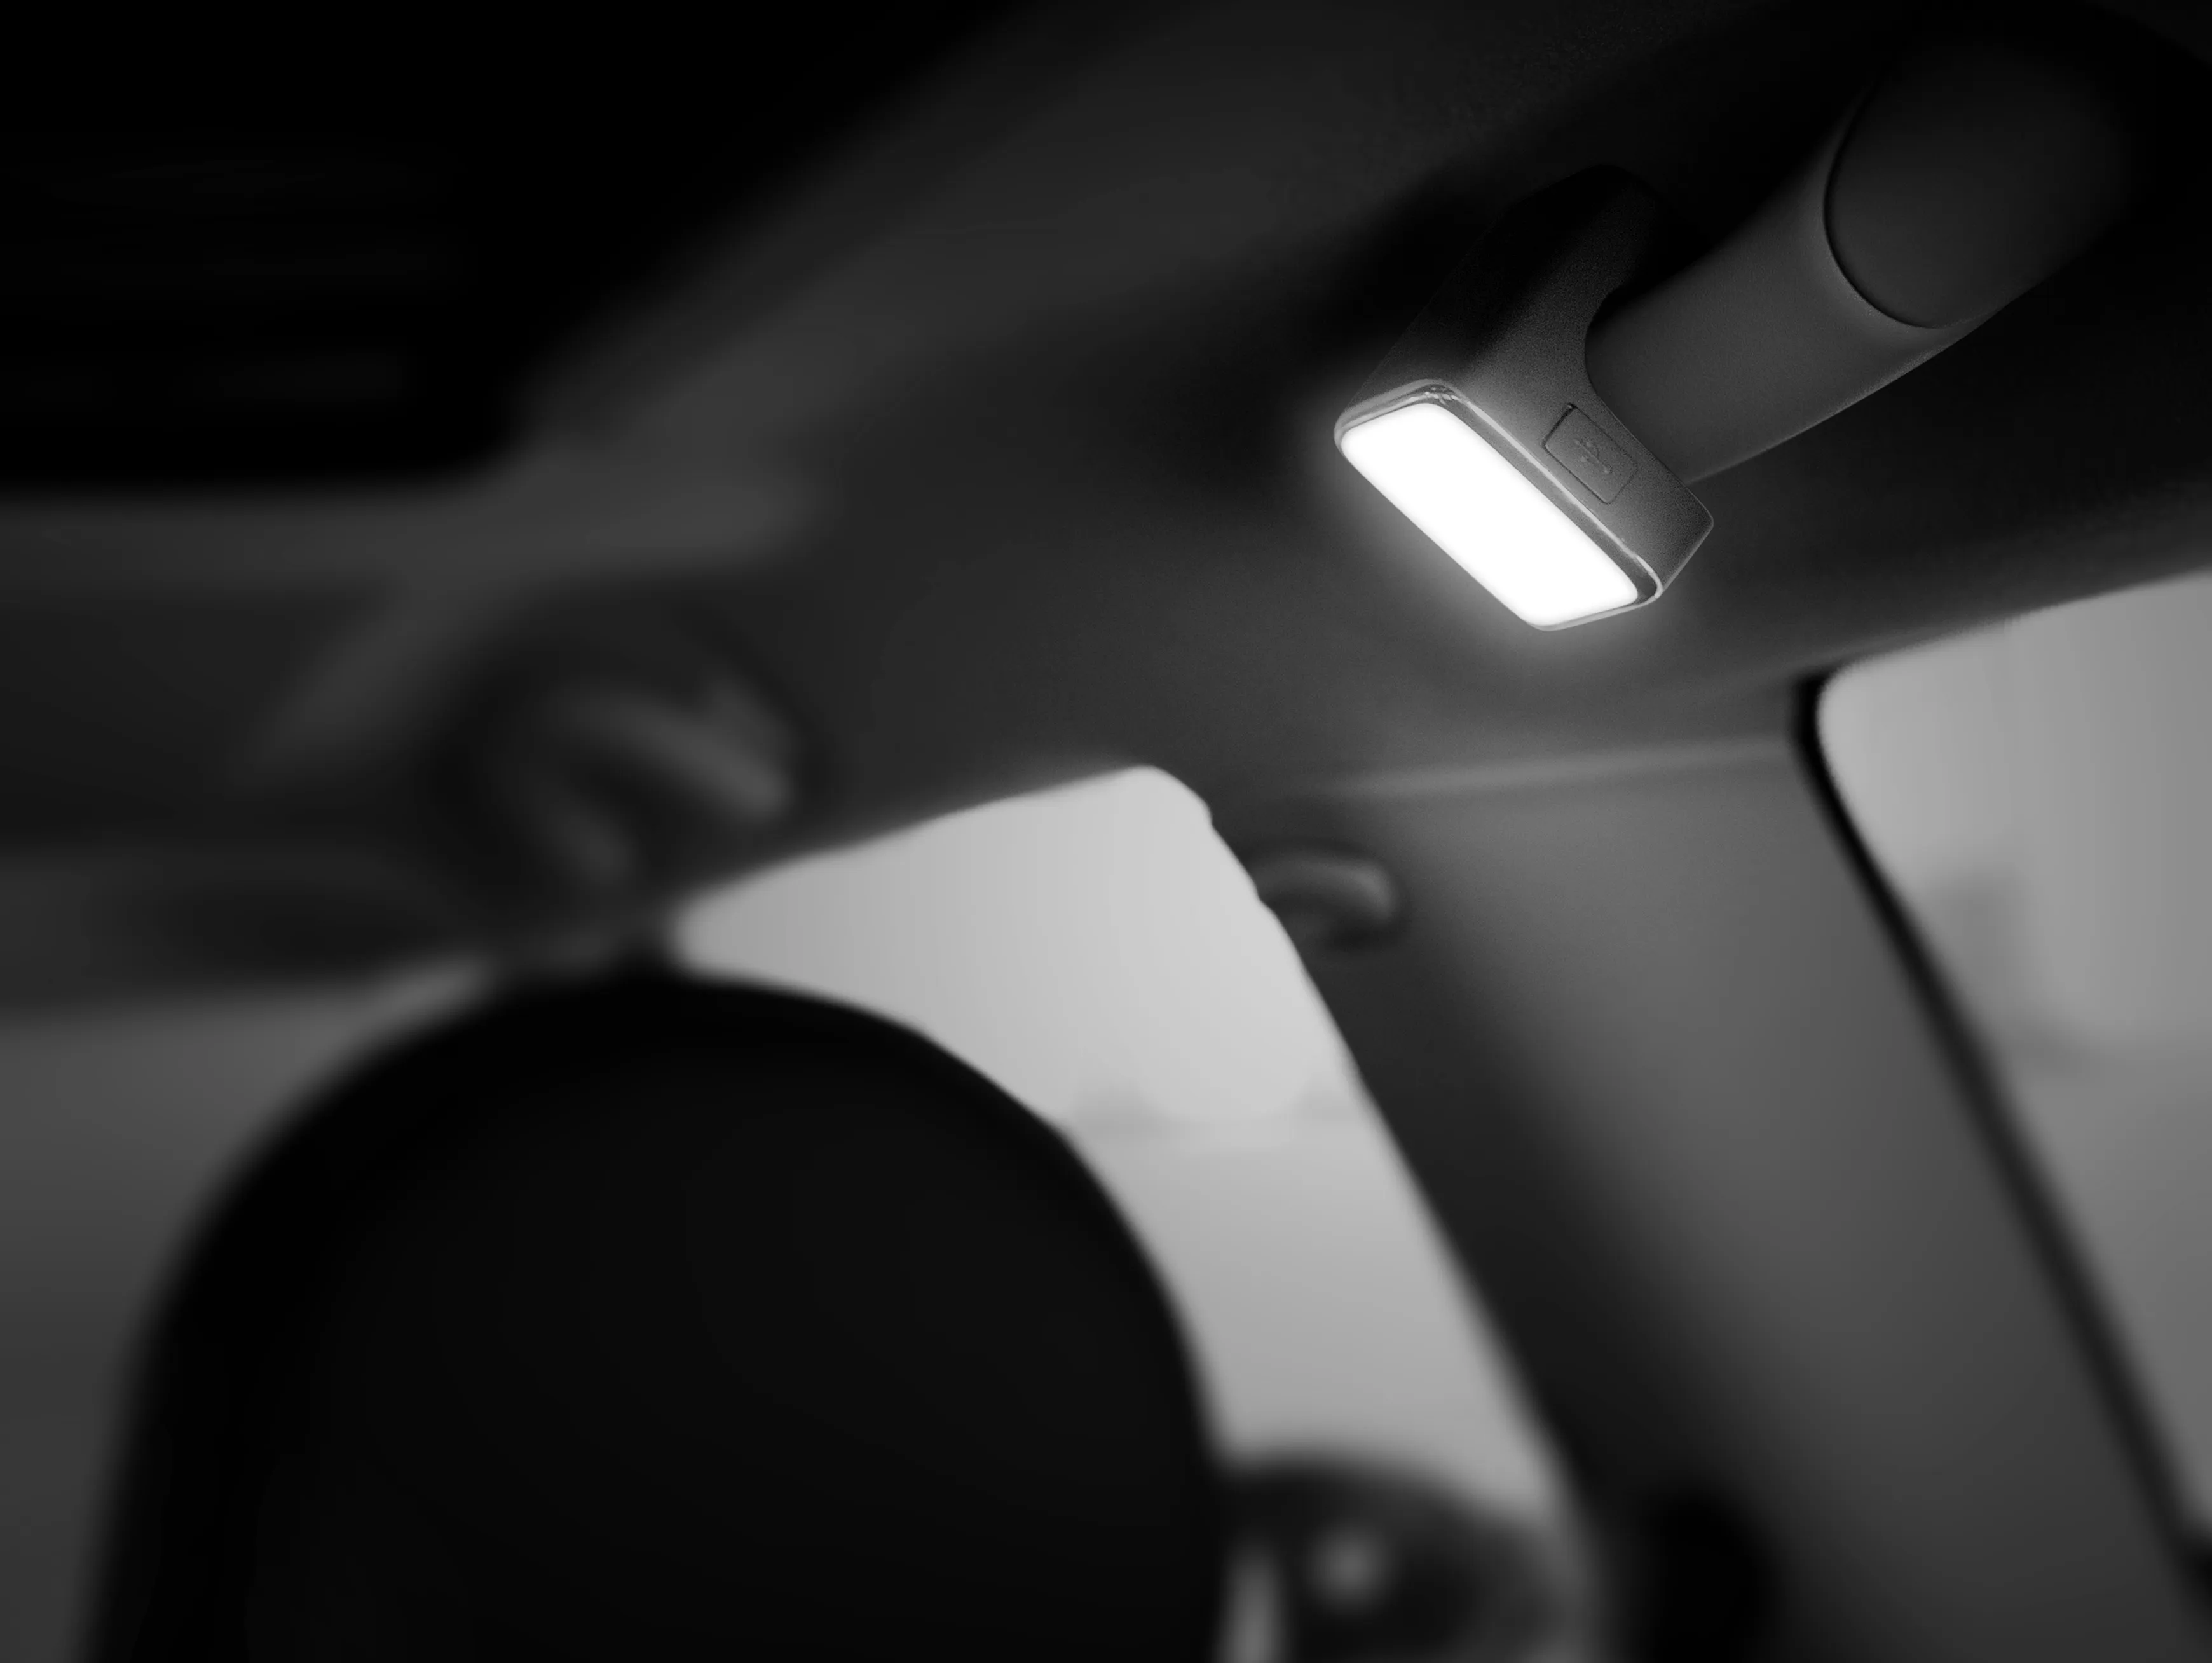 An osram LED lamp on a car handle